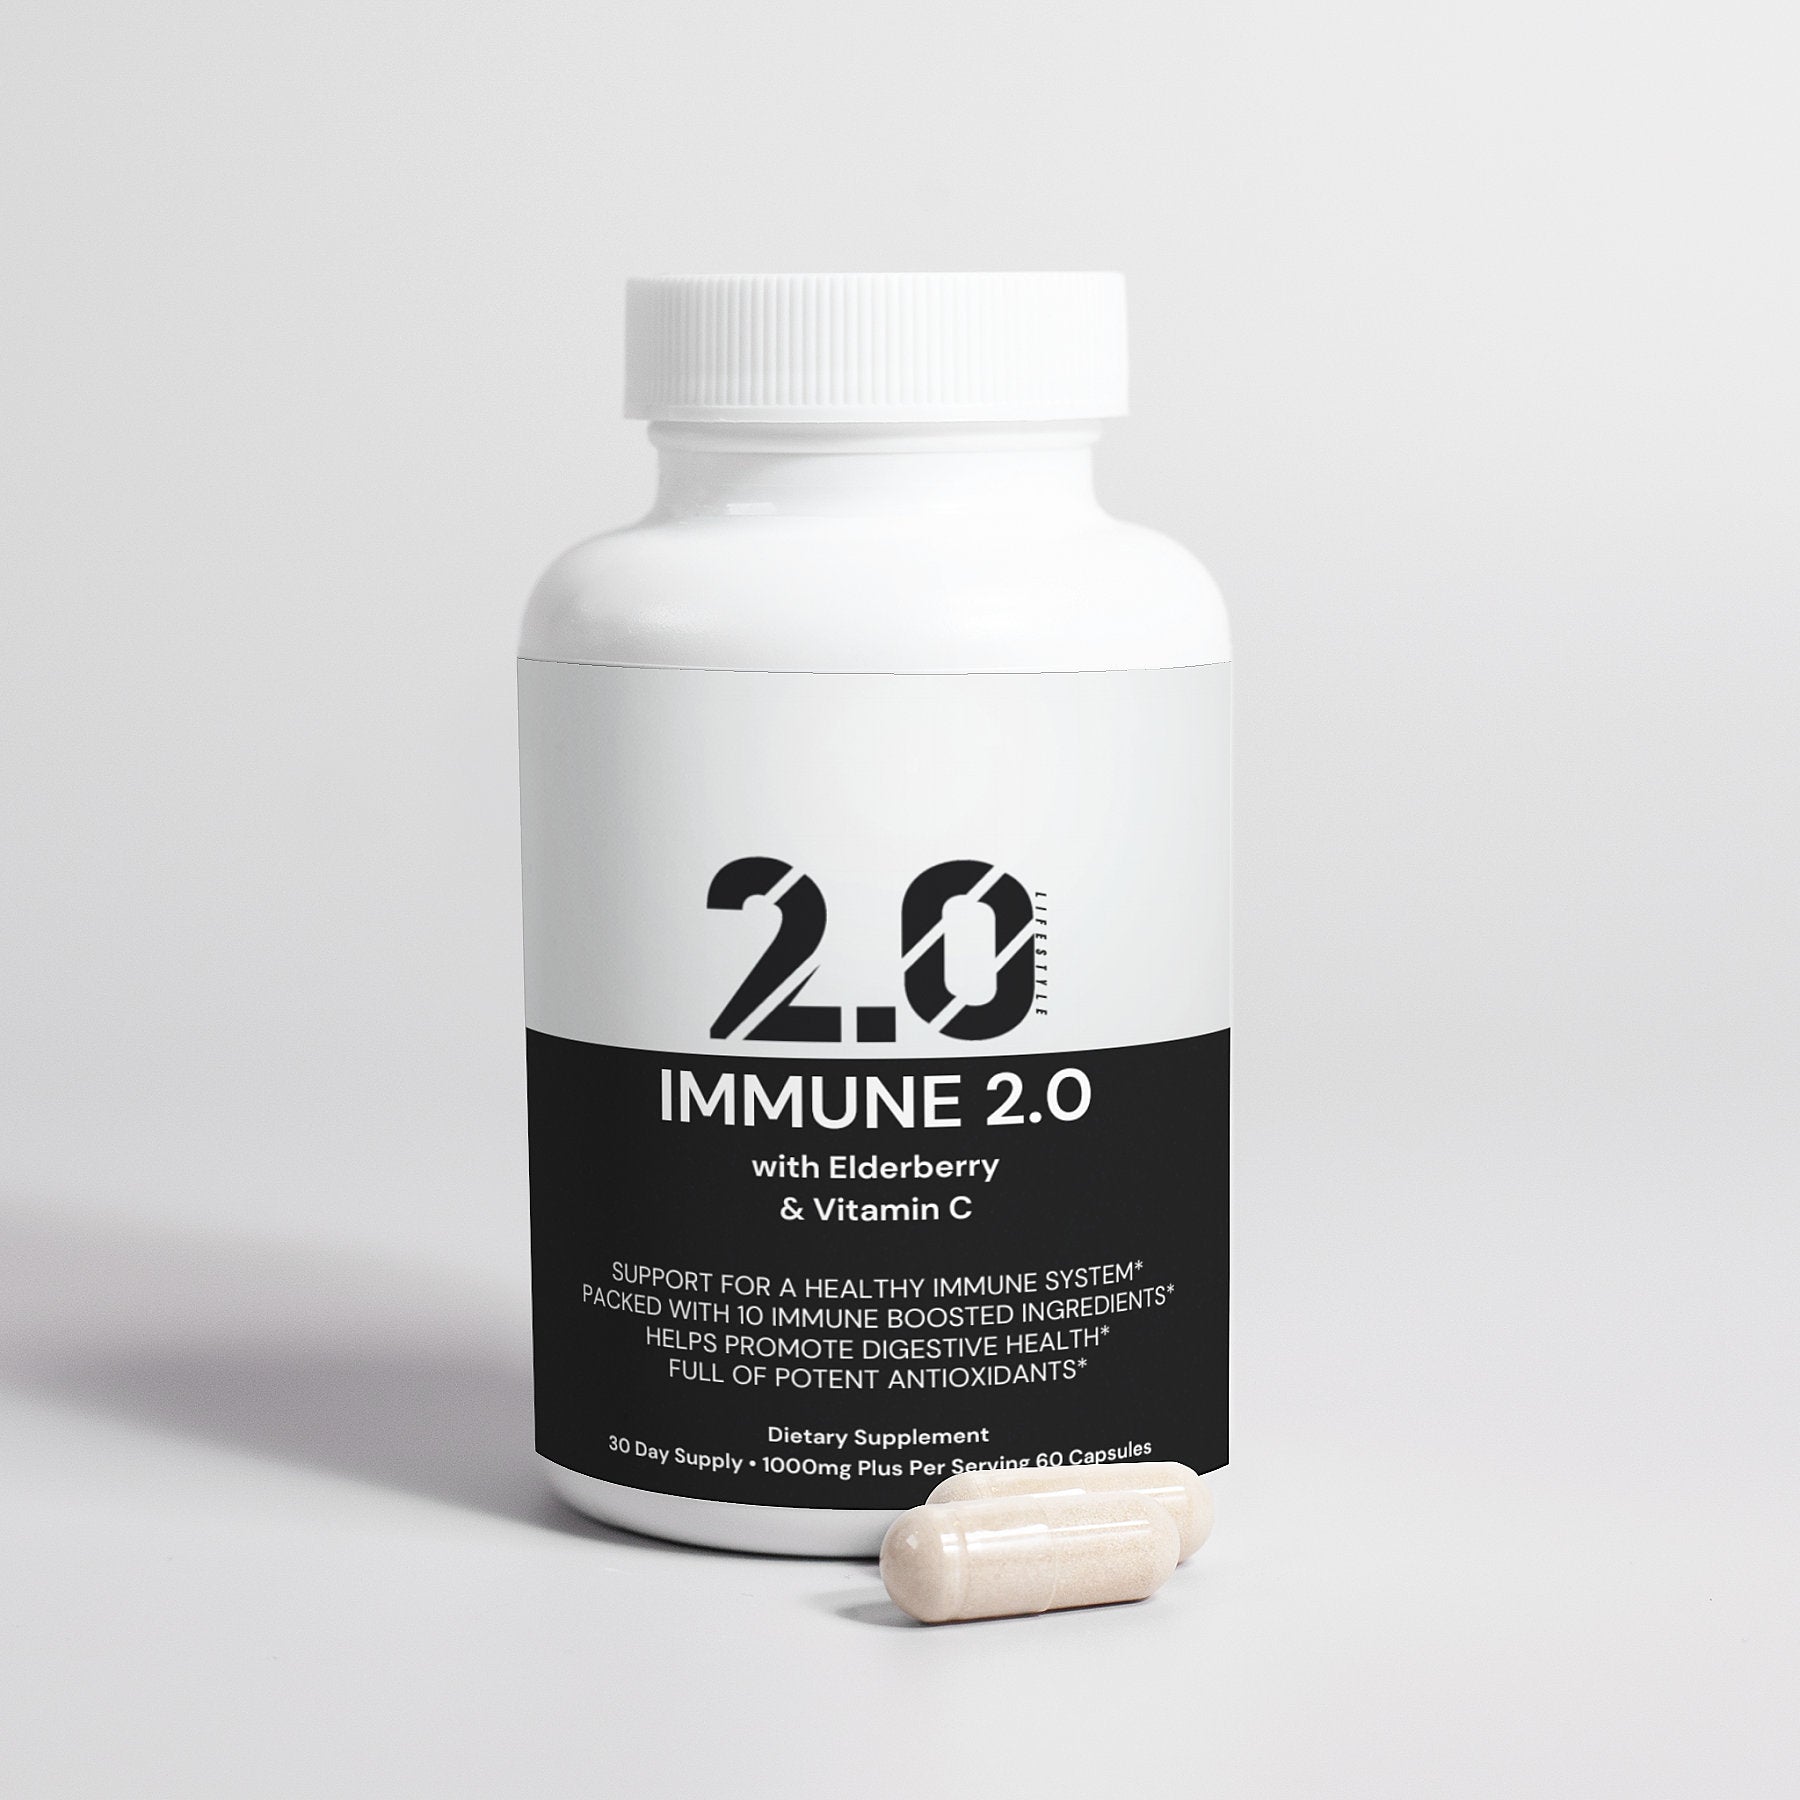 Immune 2.0